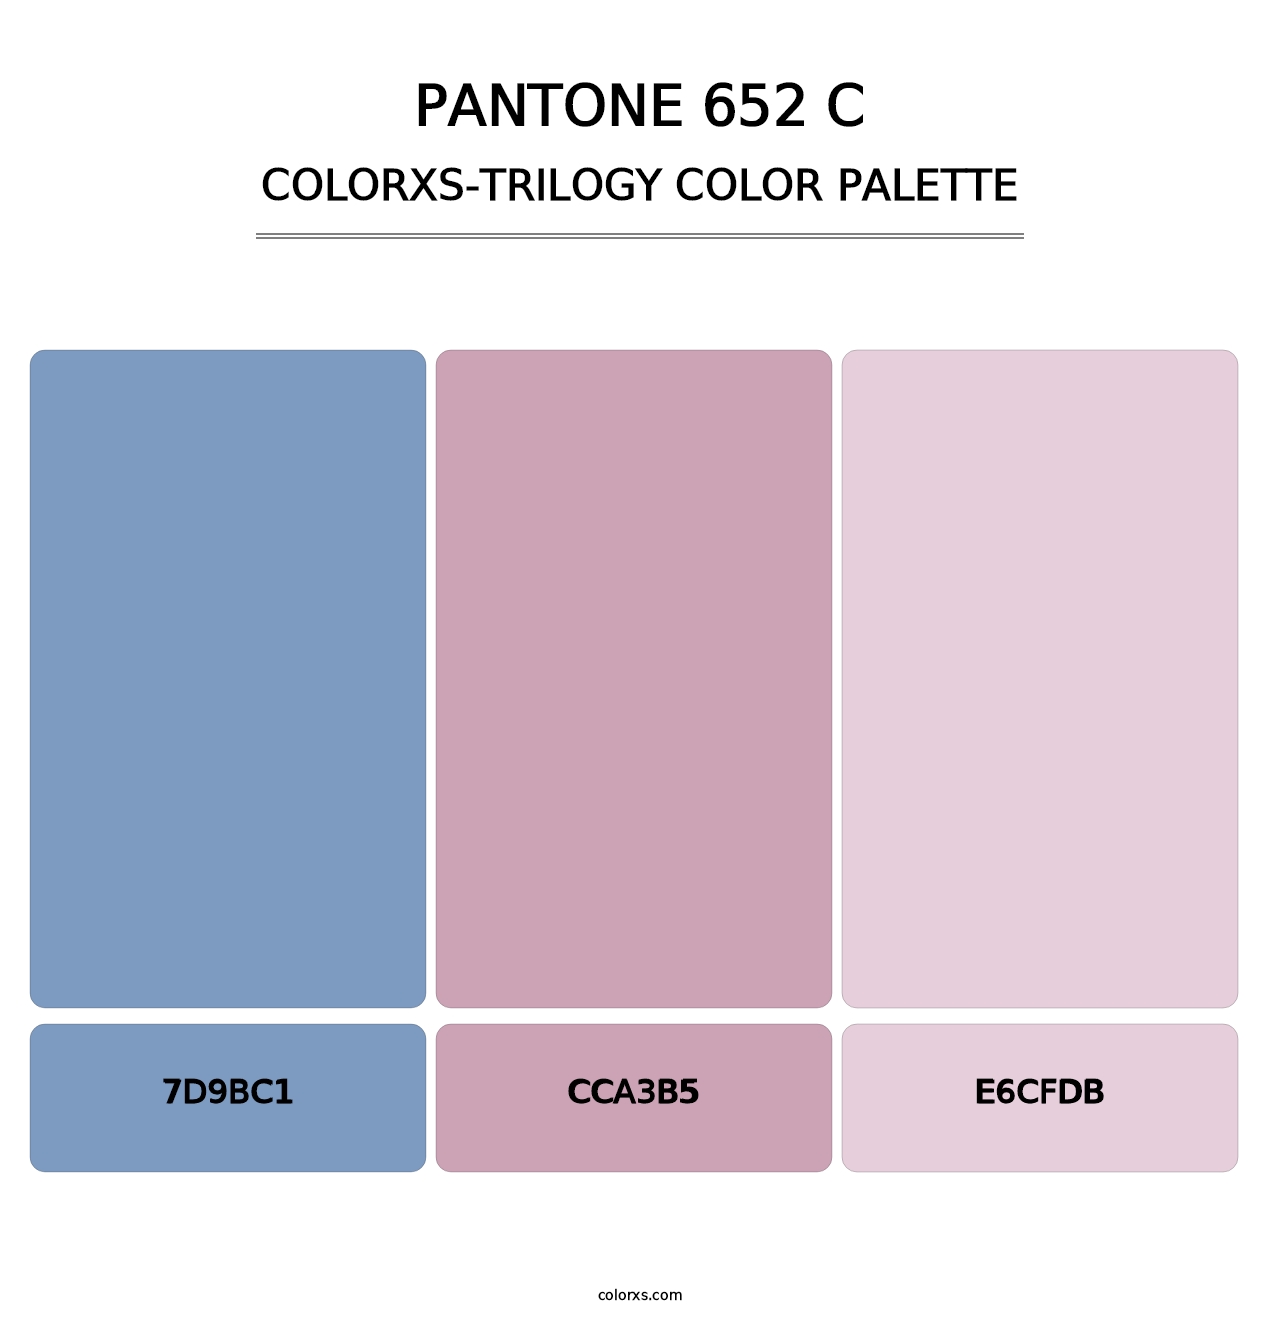 PANTONE 652 C - Colorxs Trilogy Palette